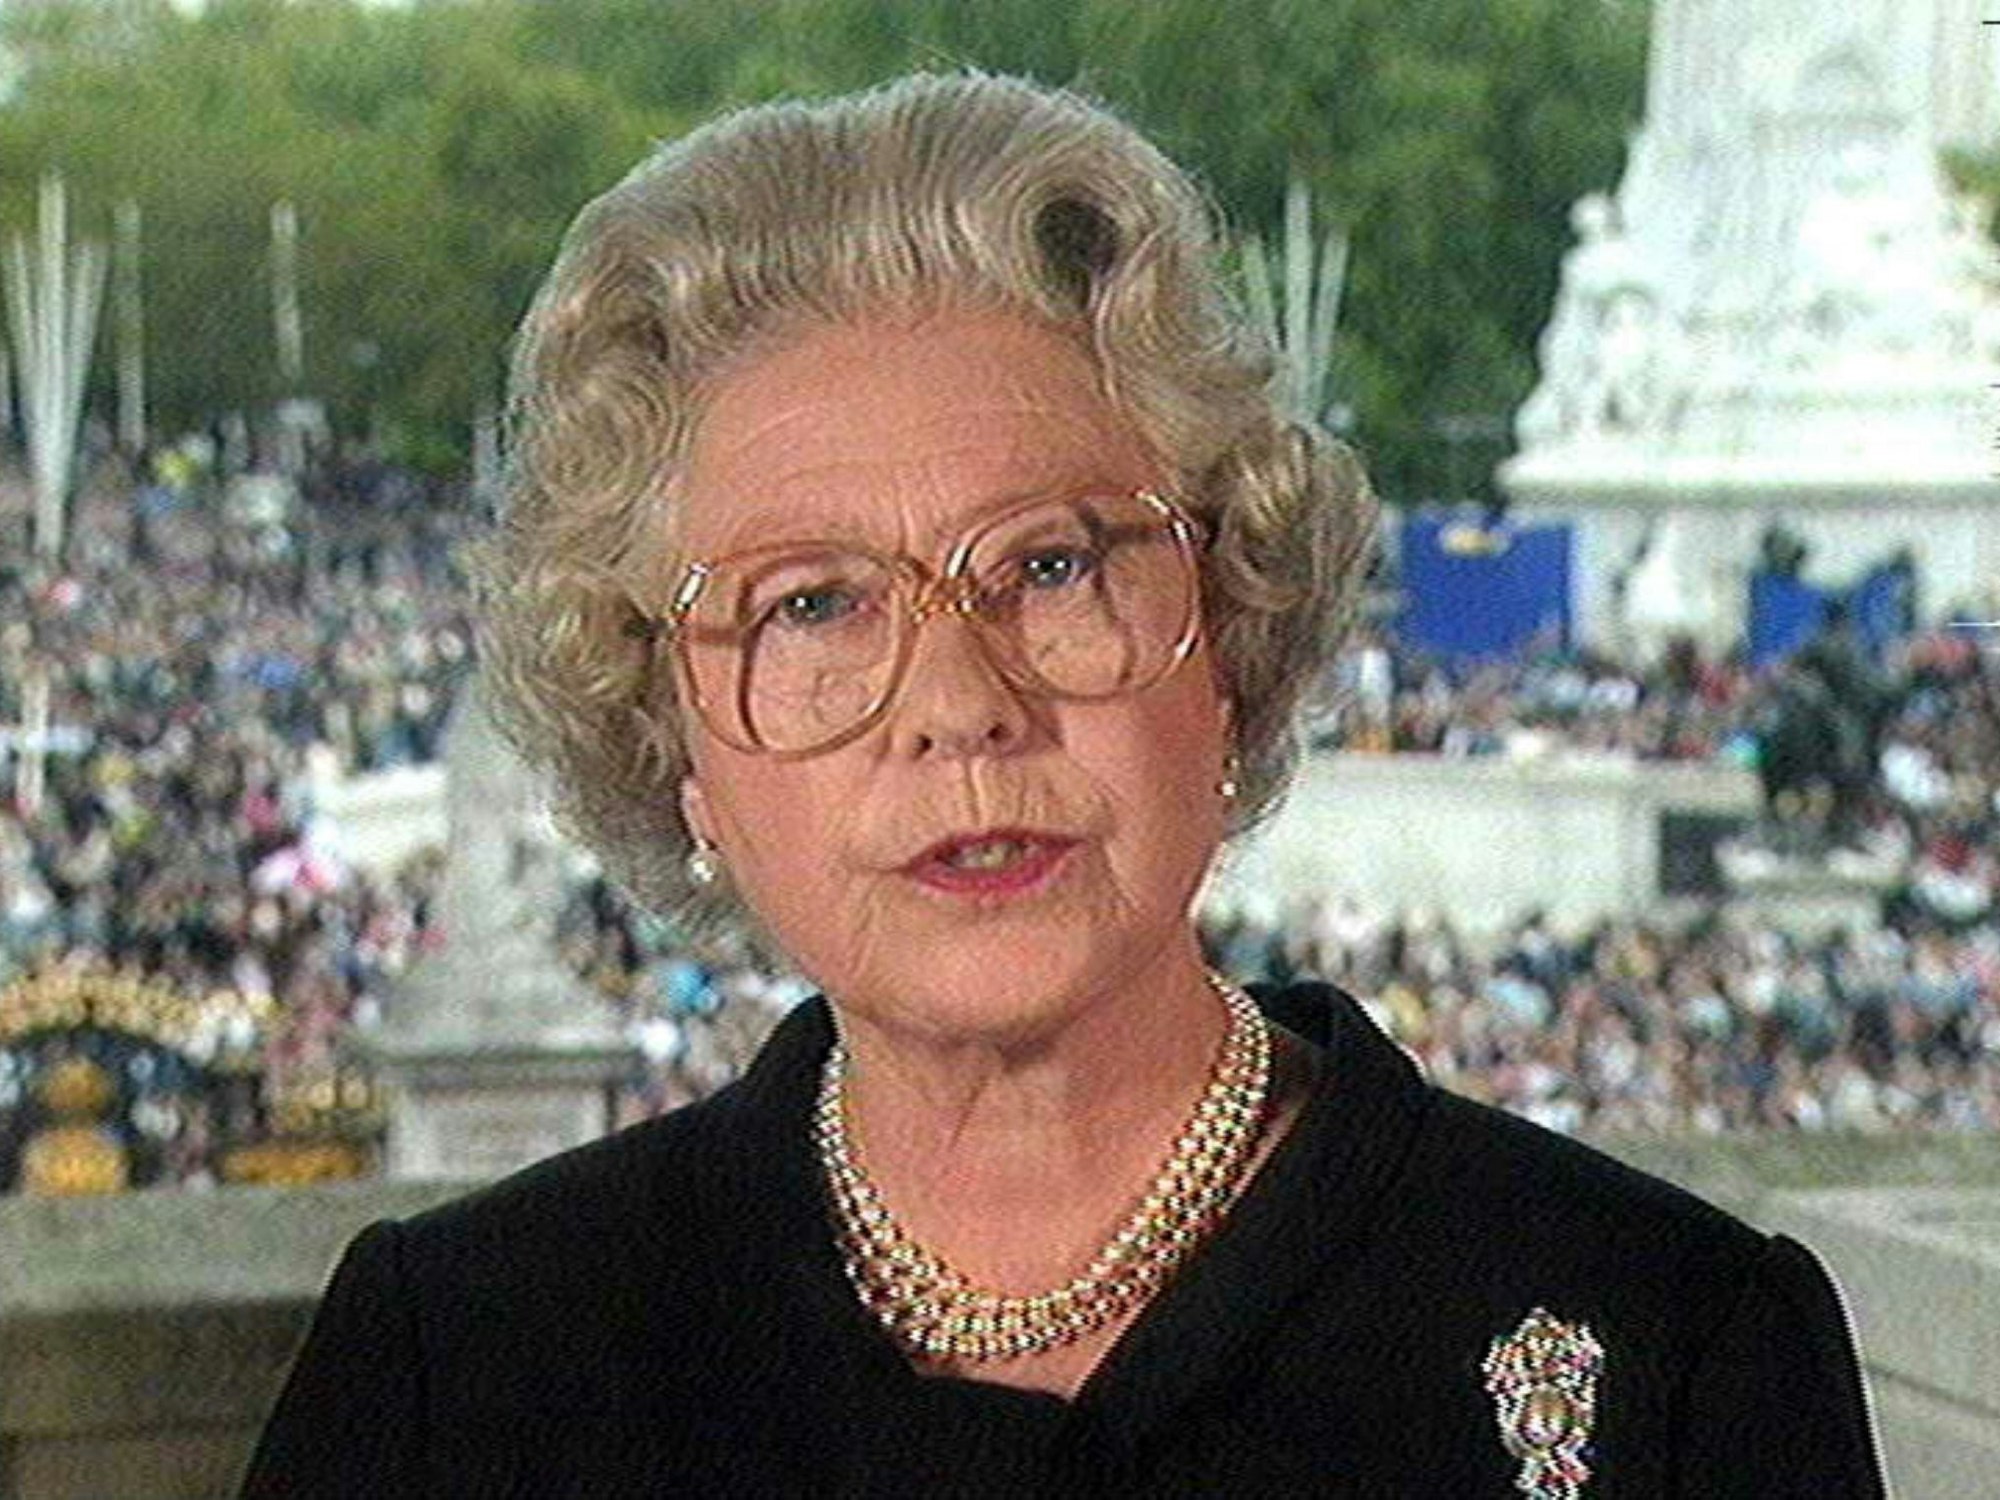 Am 5. September 1997 spricht Queen Elizabeth II. in einer außerplanmäßigen TV-Ansprache über den Unfalltod ihrer Schwiegertochter Prinzessin Diana.